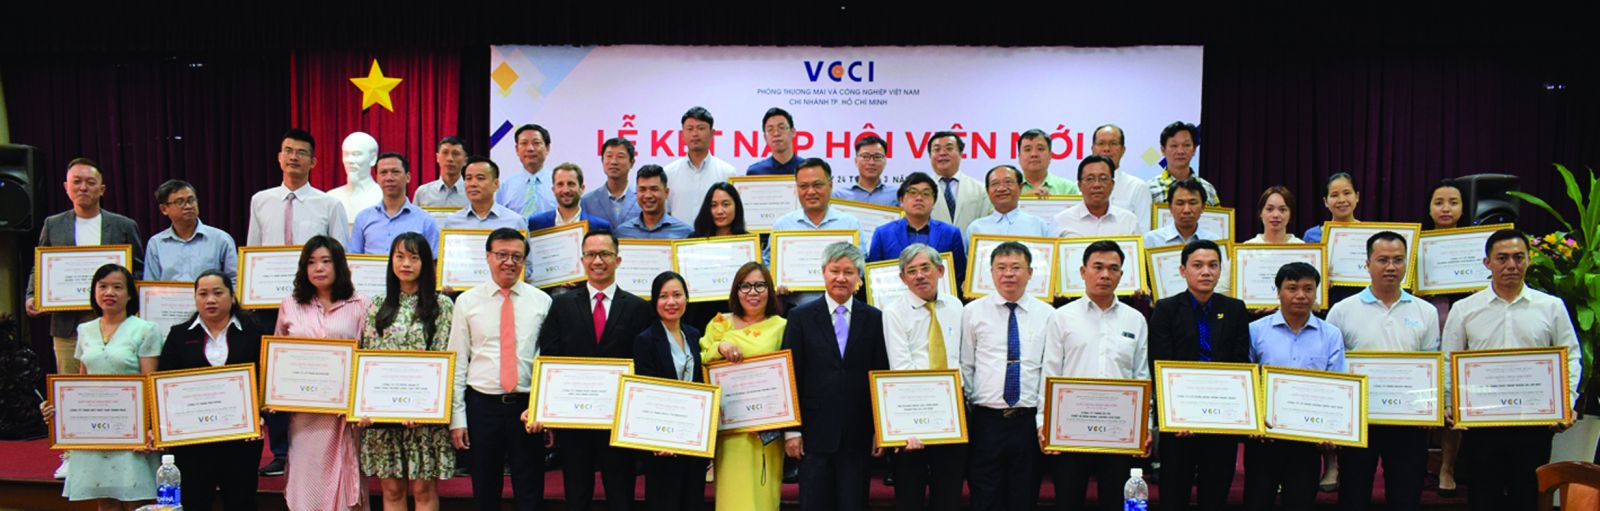 Đại diện các doanh nghiệp Hội viên mới cùng Ban giám đốc của VCCI - HCM.